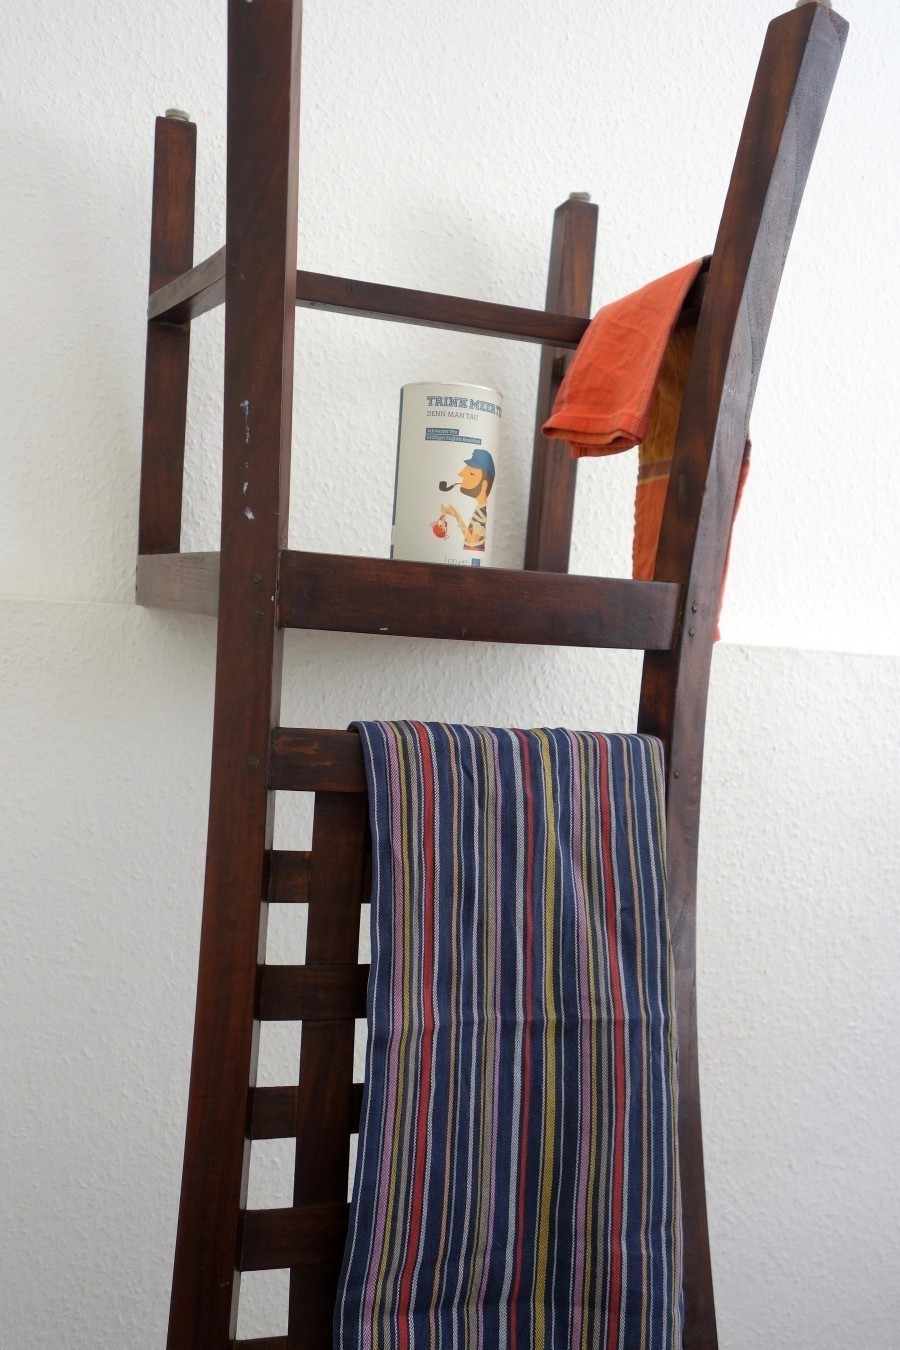 Um den Stuhl als Regal und Handtuchhalter zu verwenden, wird er einfach auf den Kopf gestellt und mit Dübeln und langen Schrauben an der Wand fest verschraubt.